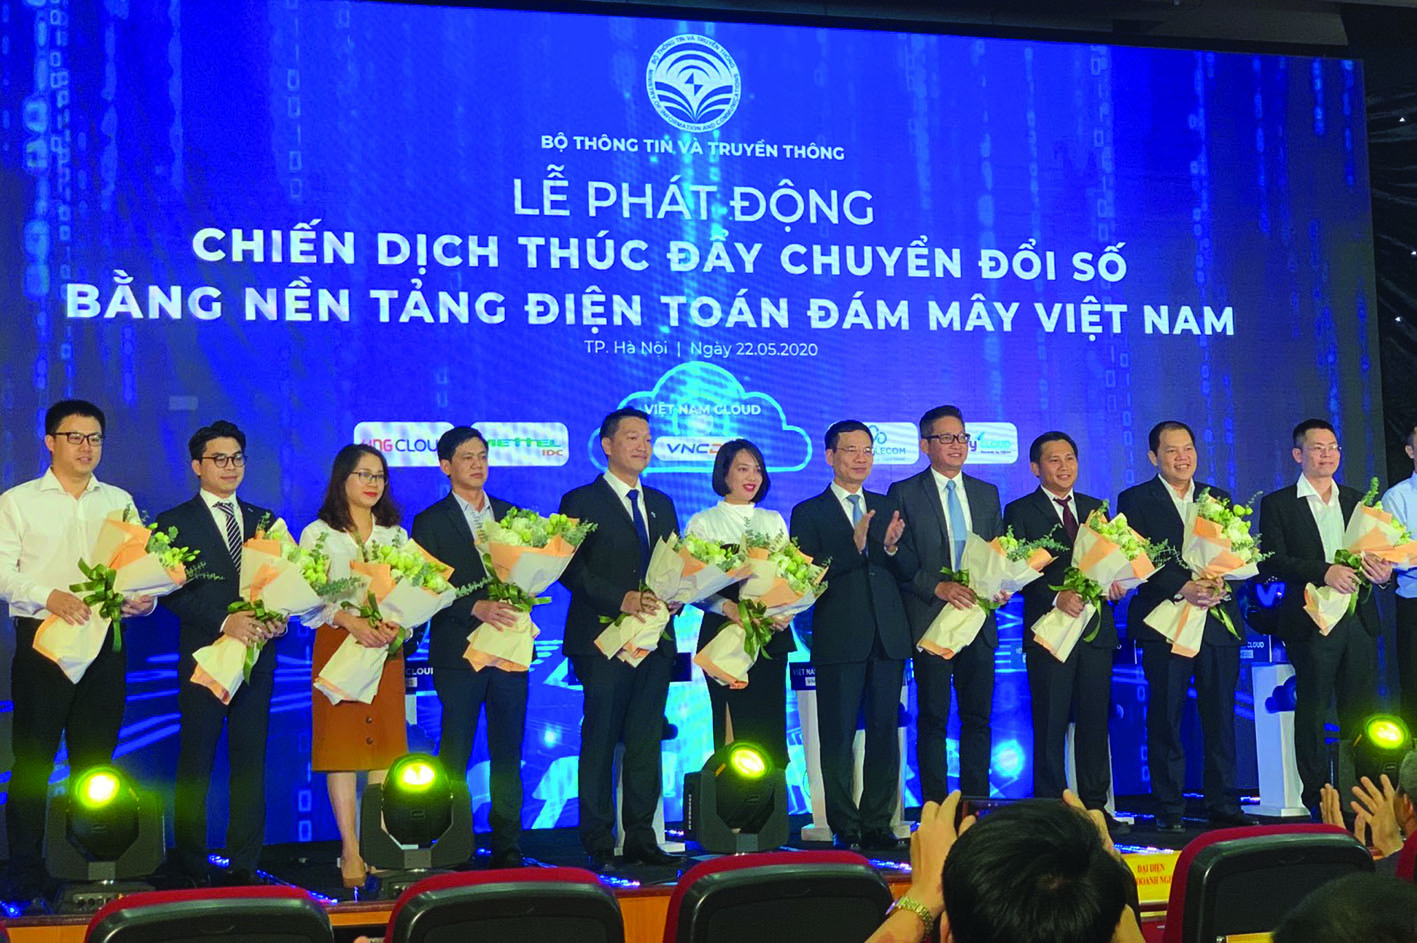  Các doanh nghiệp cung cấp dịch vụ đám mây hàng đầu Việt Nam tham gia chiến dịch thúc đẩy chuyển đổi số do Bộ Thông tin và Truyền thông phát động.